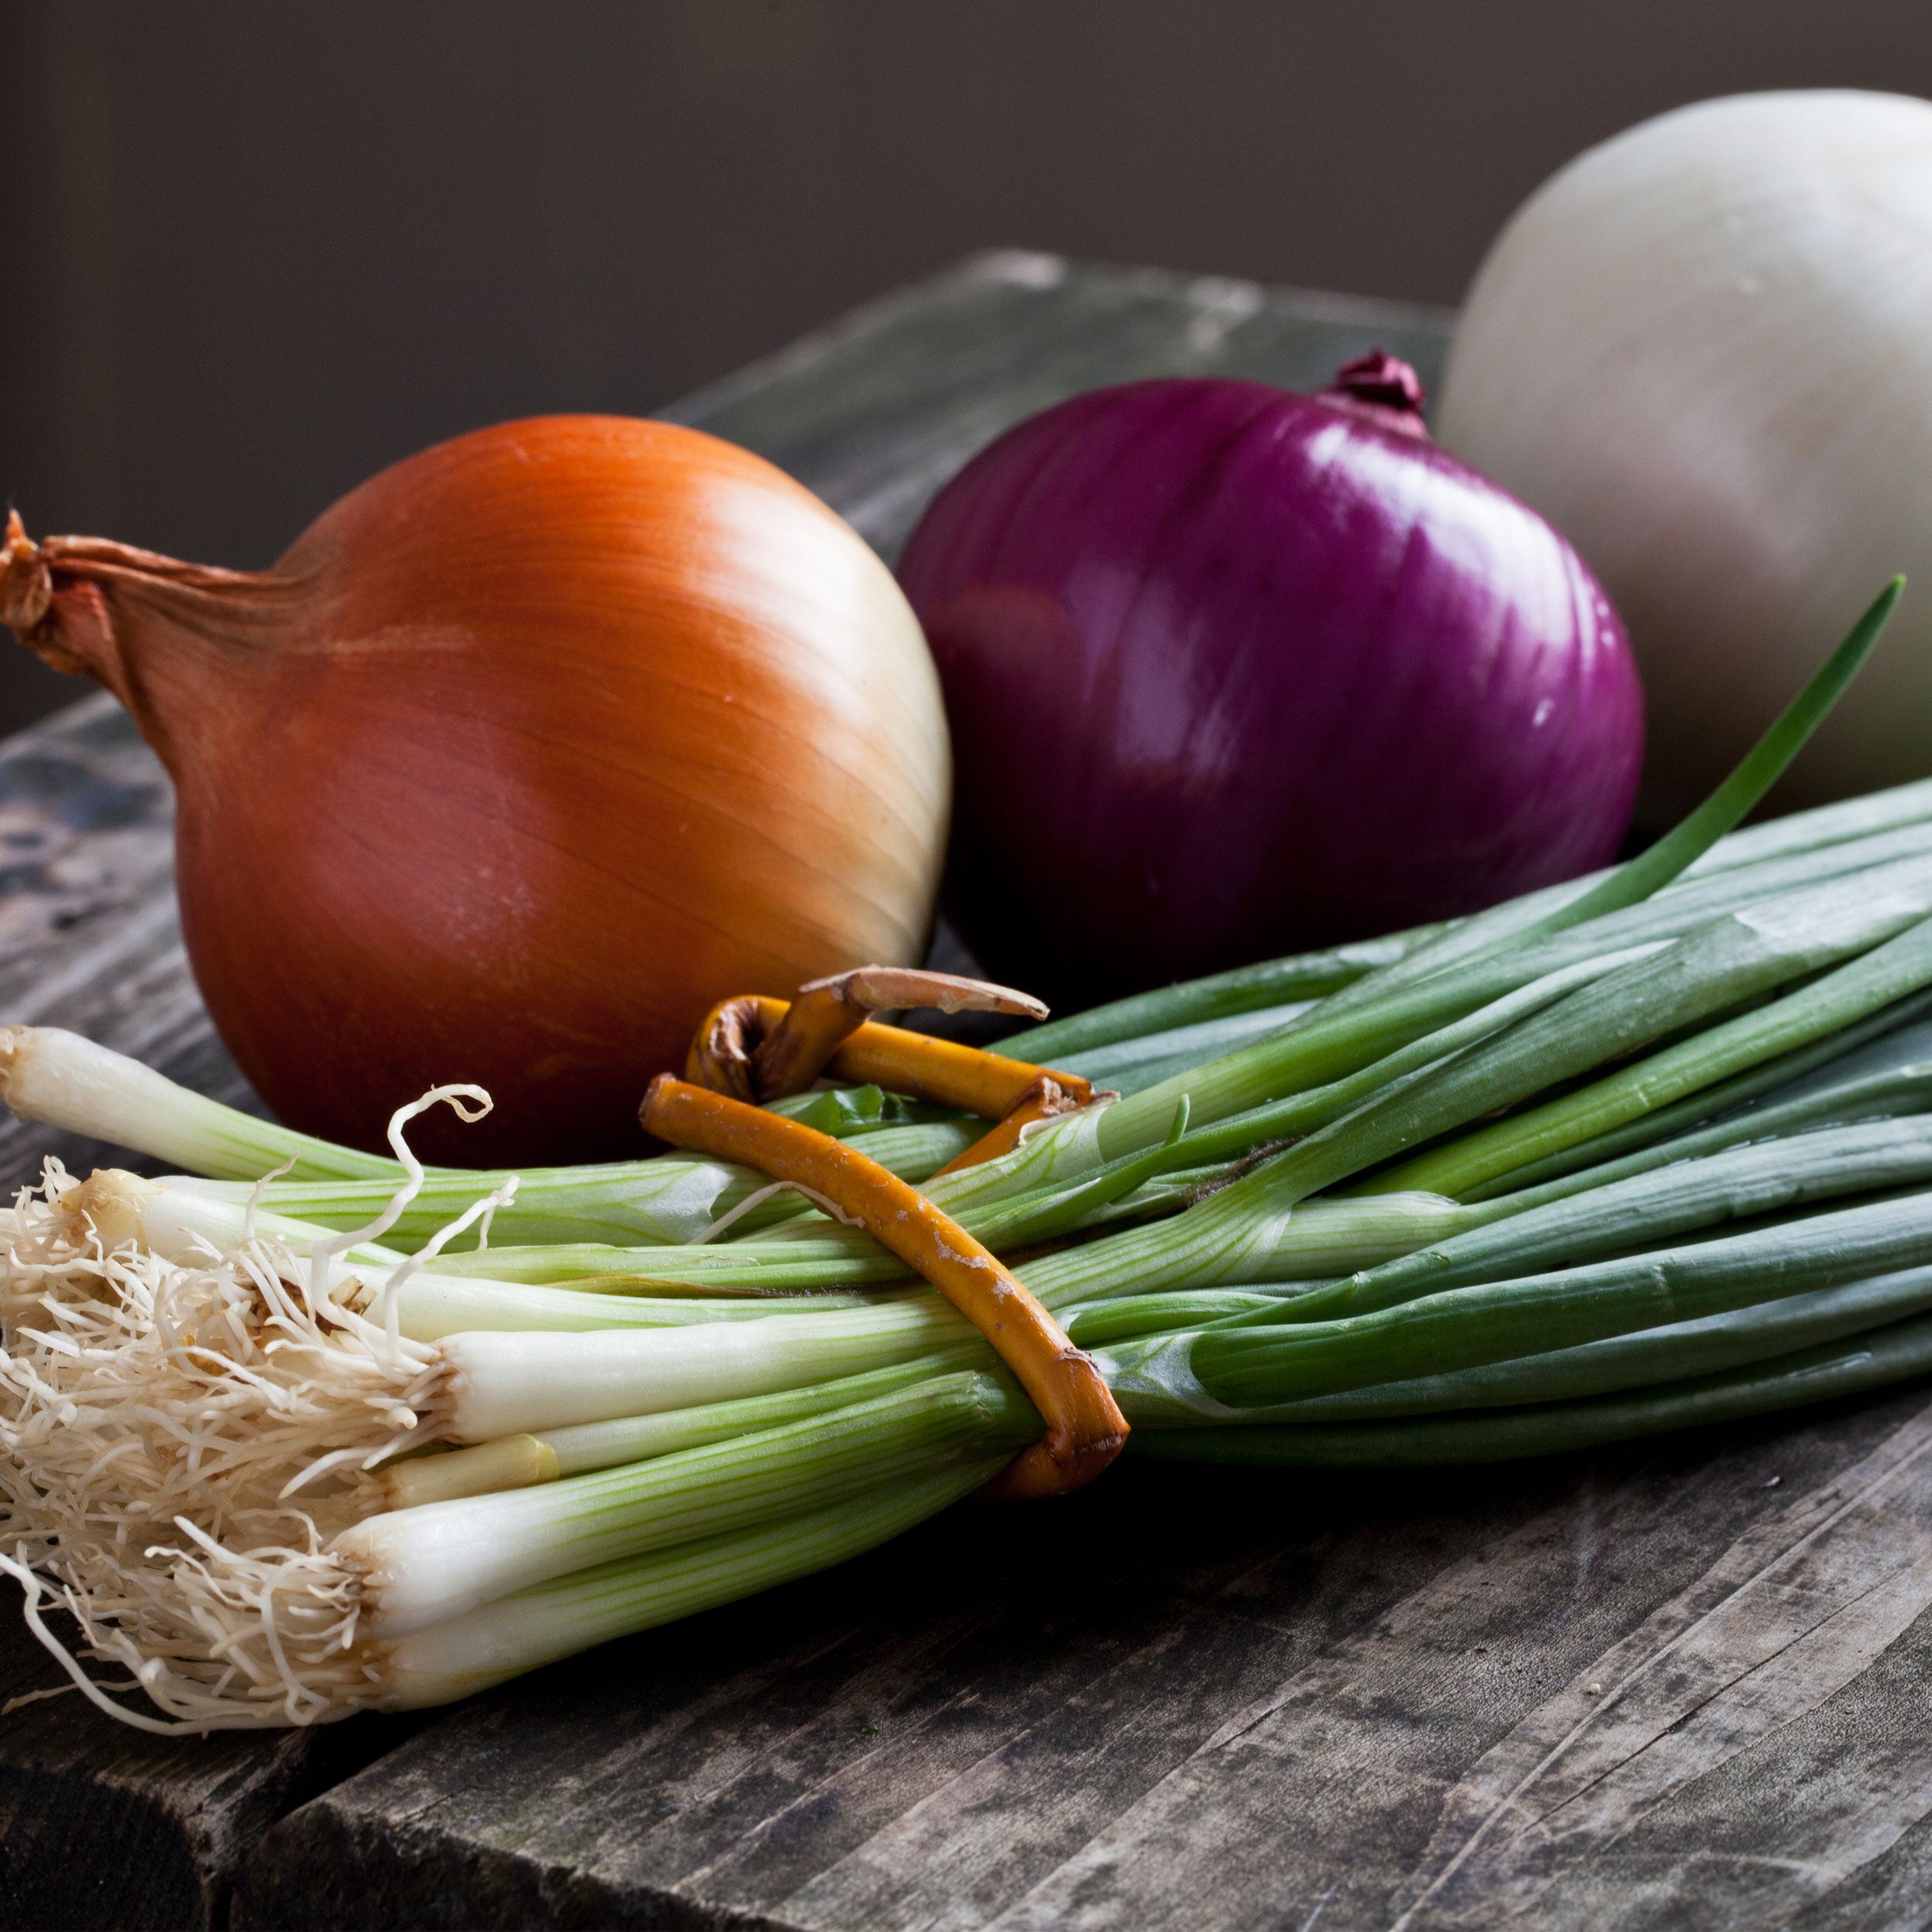 White Onion Sets Naturally Grown | White Ebenezer Onion Bulbs 1 Pound - FREE SHIPPING